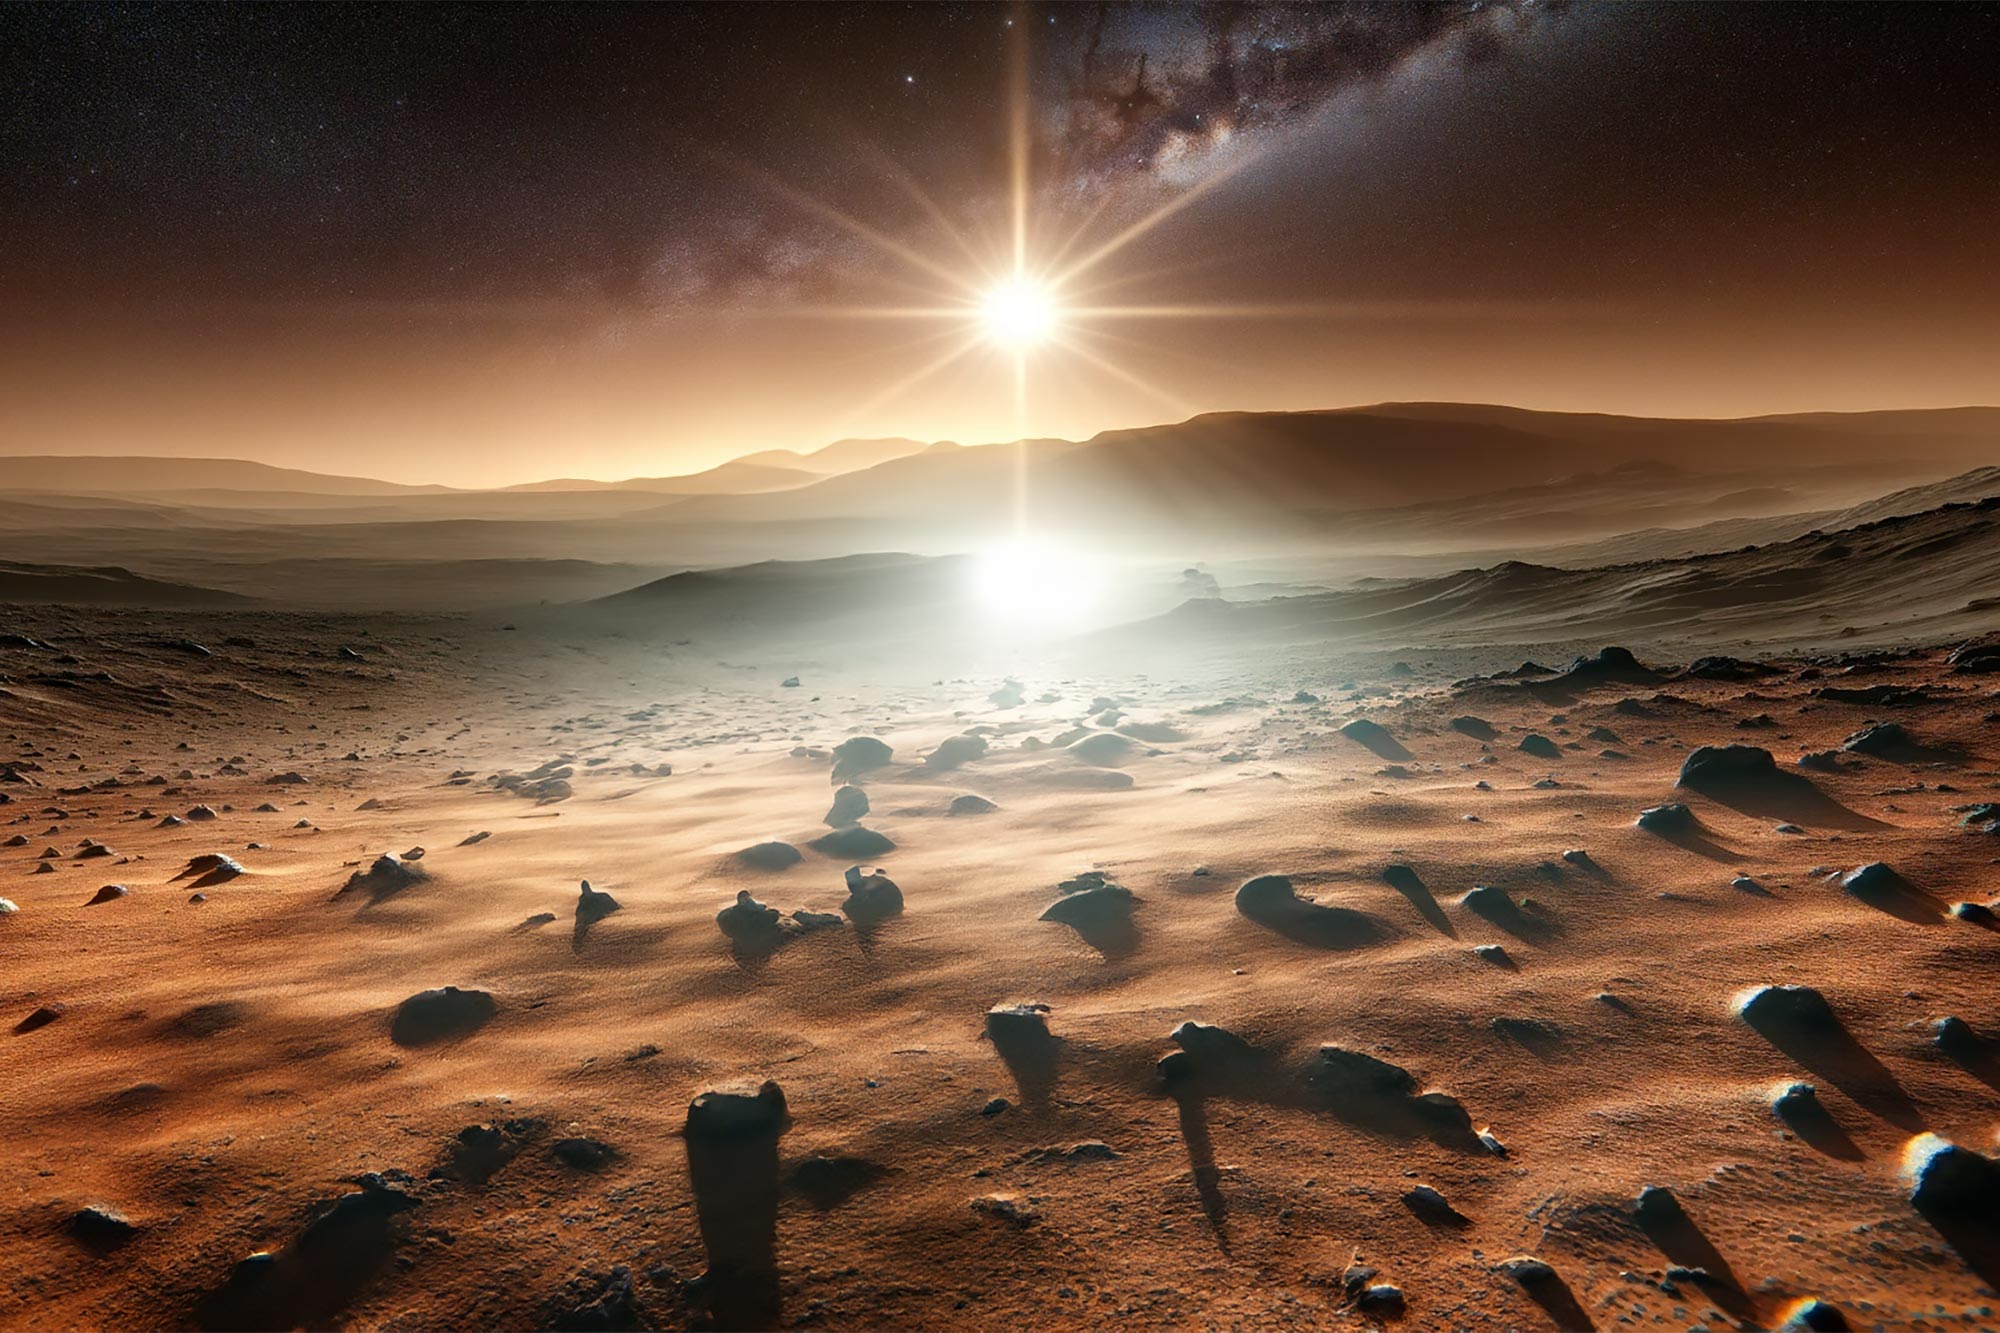 Tàu thăm dò sao Hỏa Curiosity của NASA chụp lại một ngày trên sao Hỏa, từ bình minh đến hoàng hôn